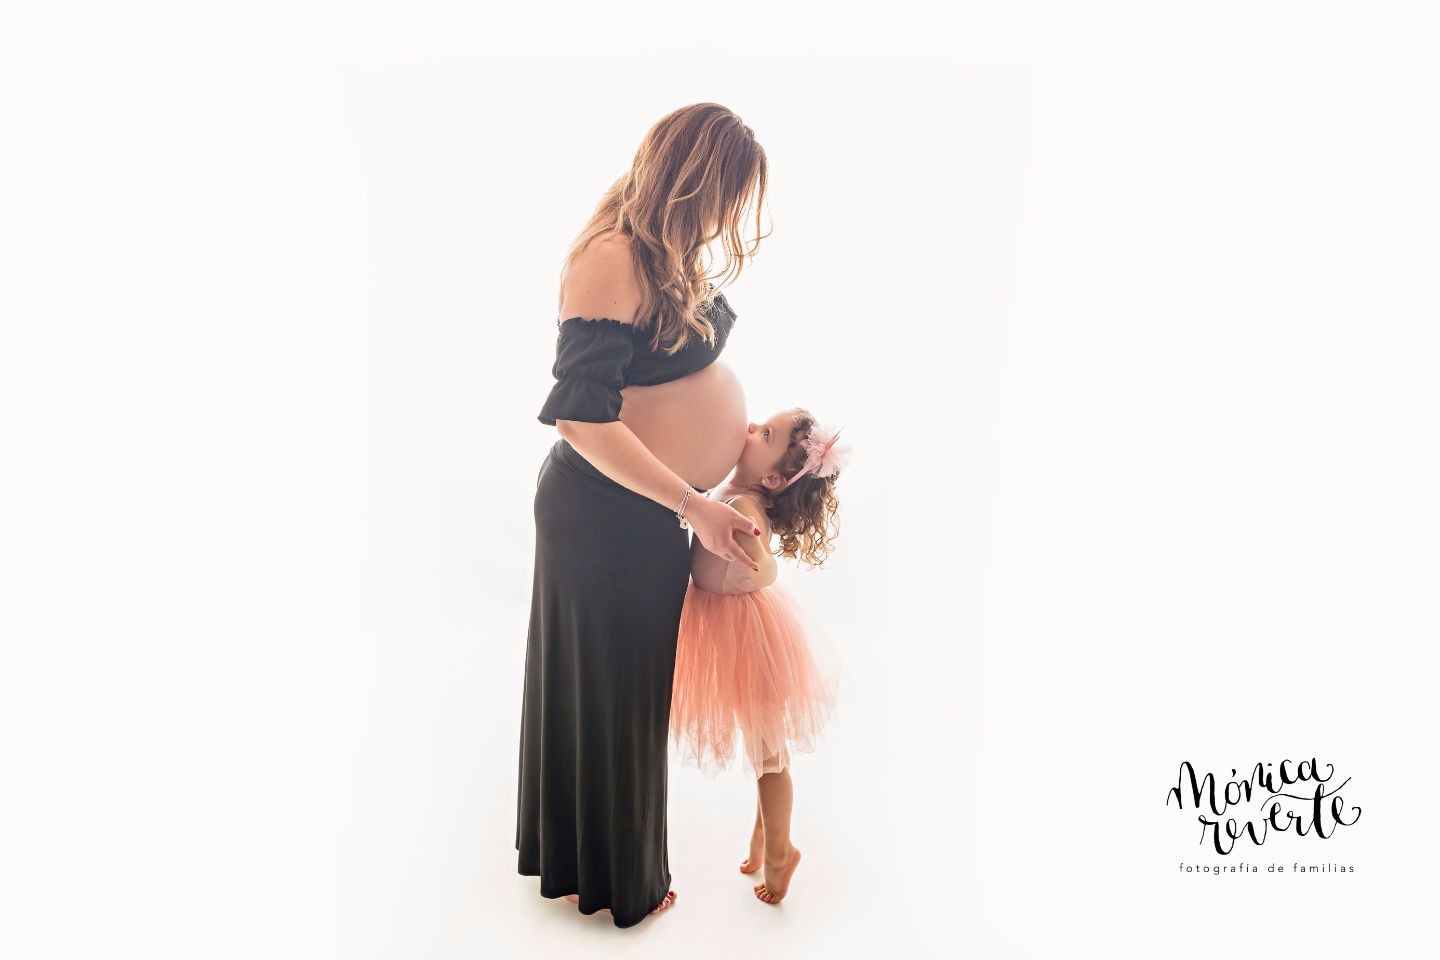 Sesiones fotográficas de embarazo en Madrid